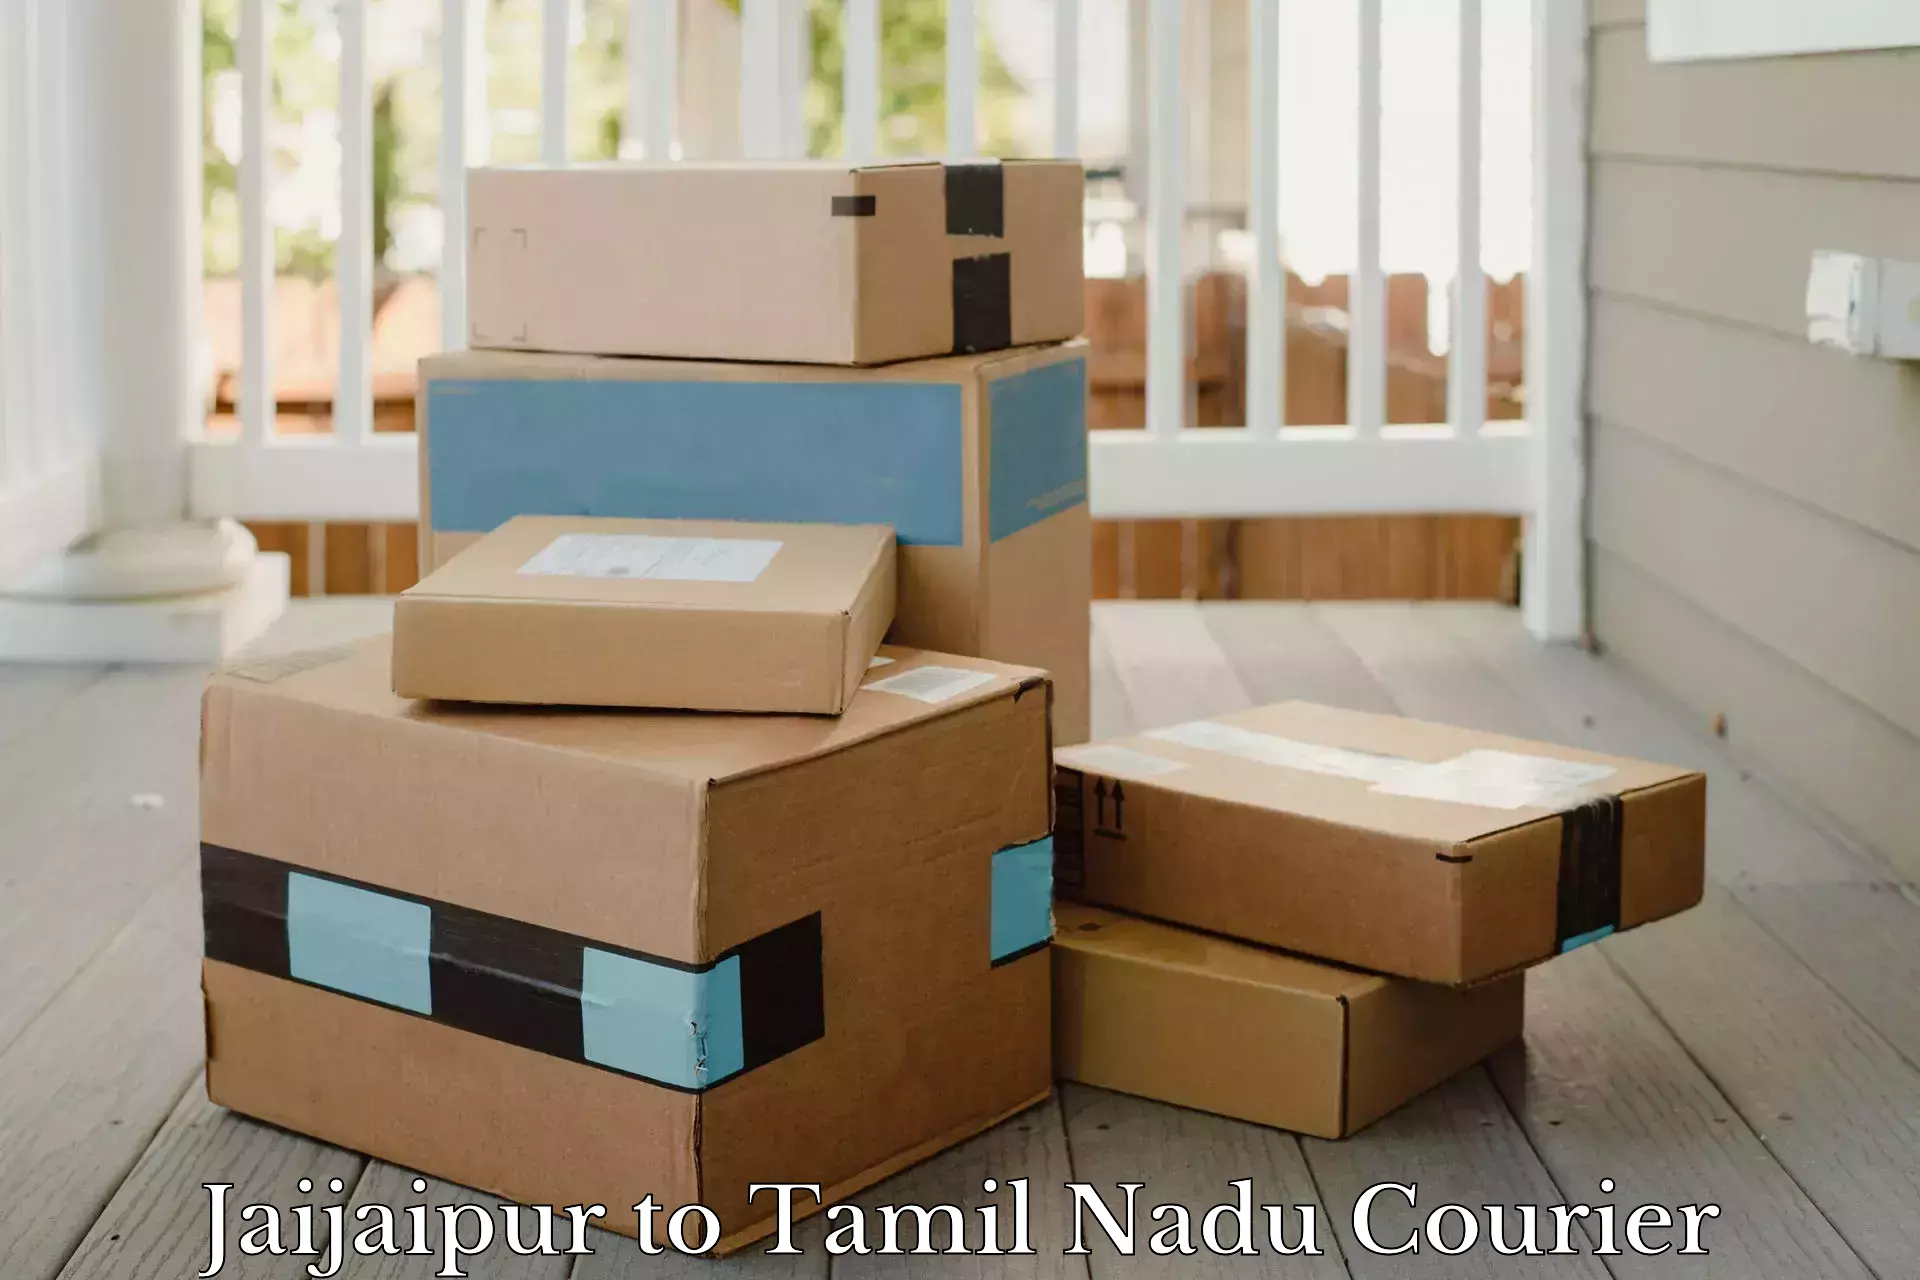 Regular parcel service Jaijaipur to Tirukalukundram